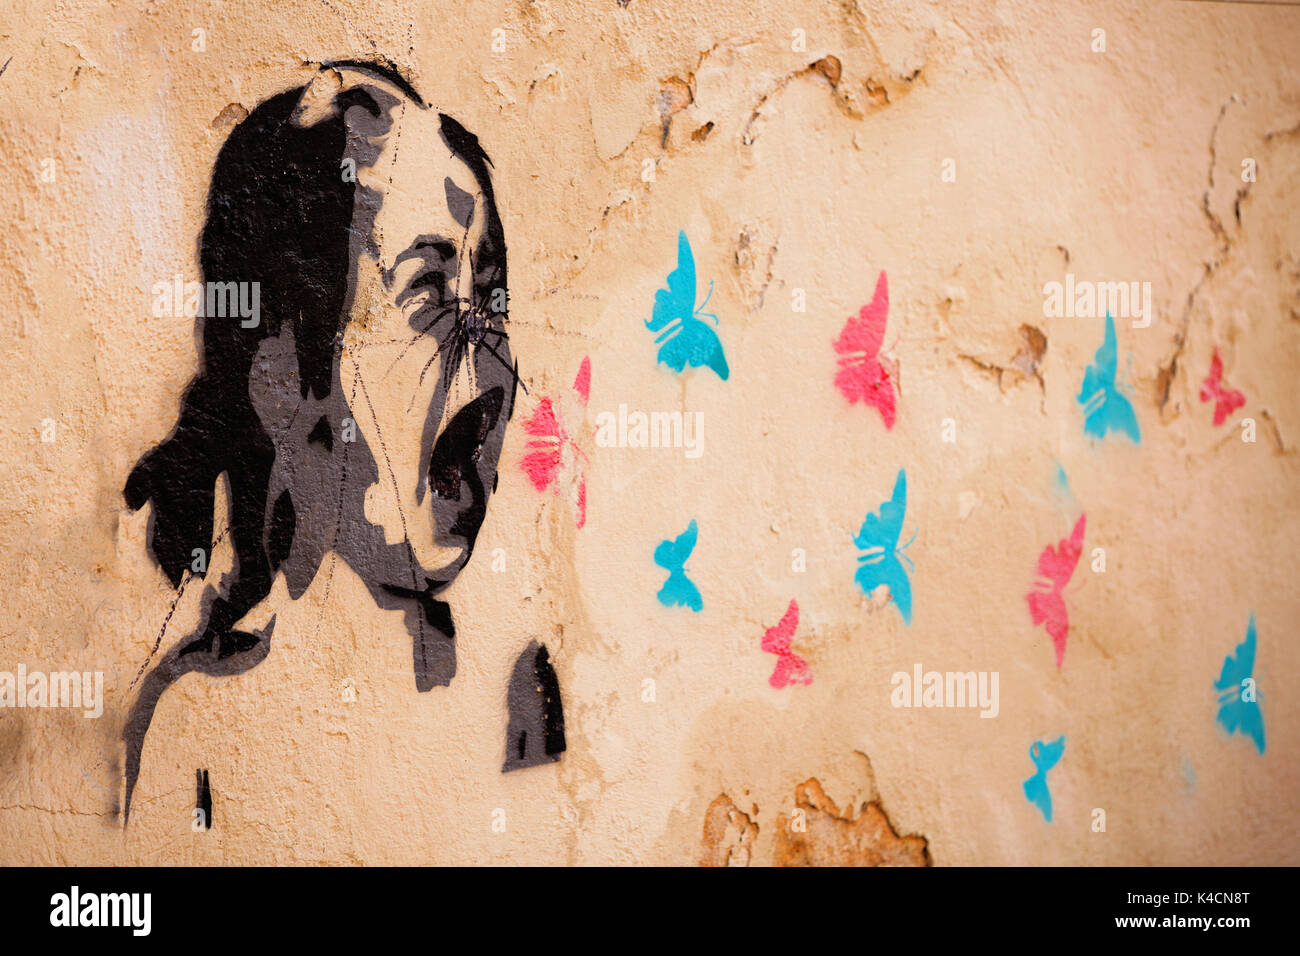 Graffiti, Screaming Child, Butterflies, Symbolic Image Stock Photo